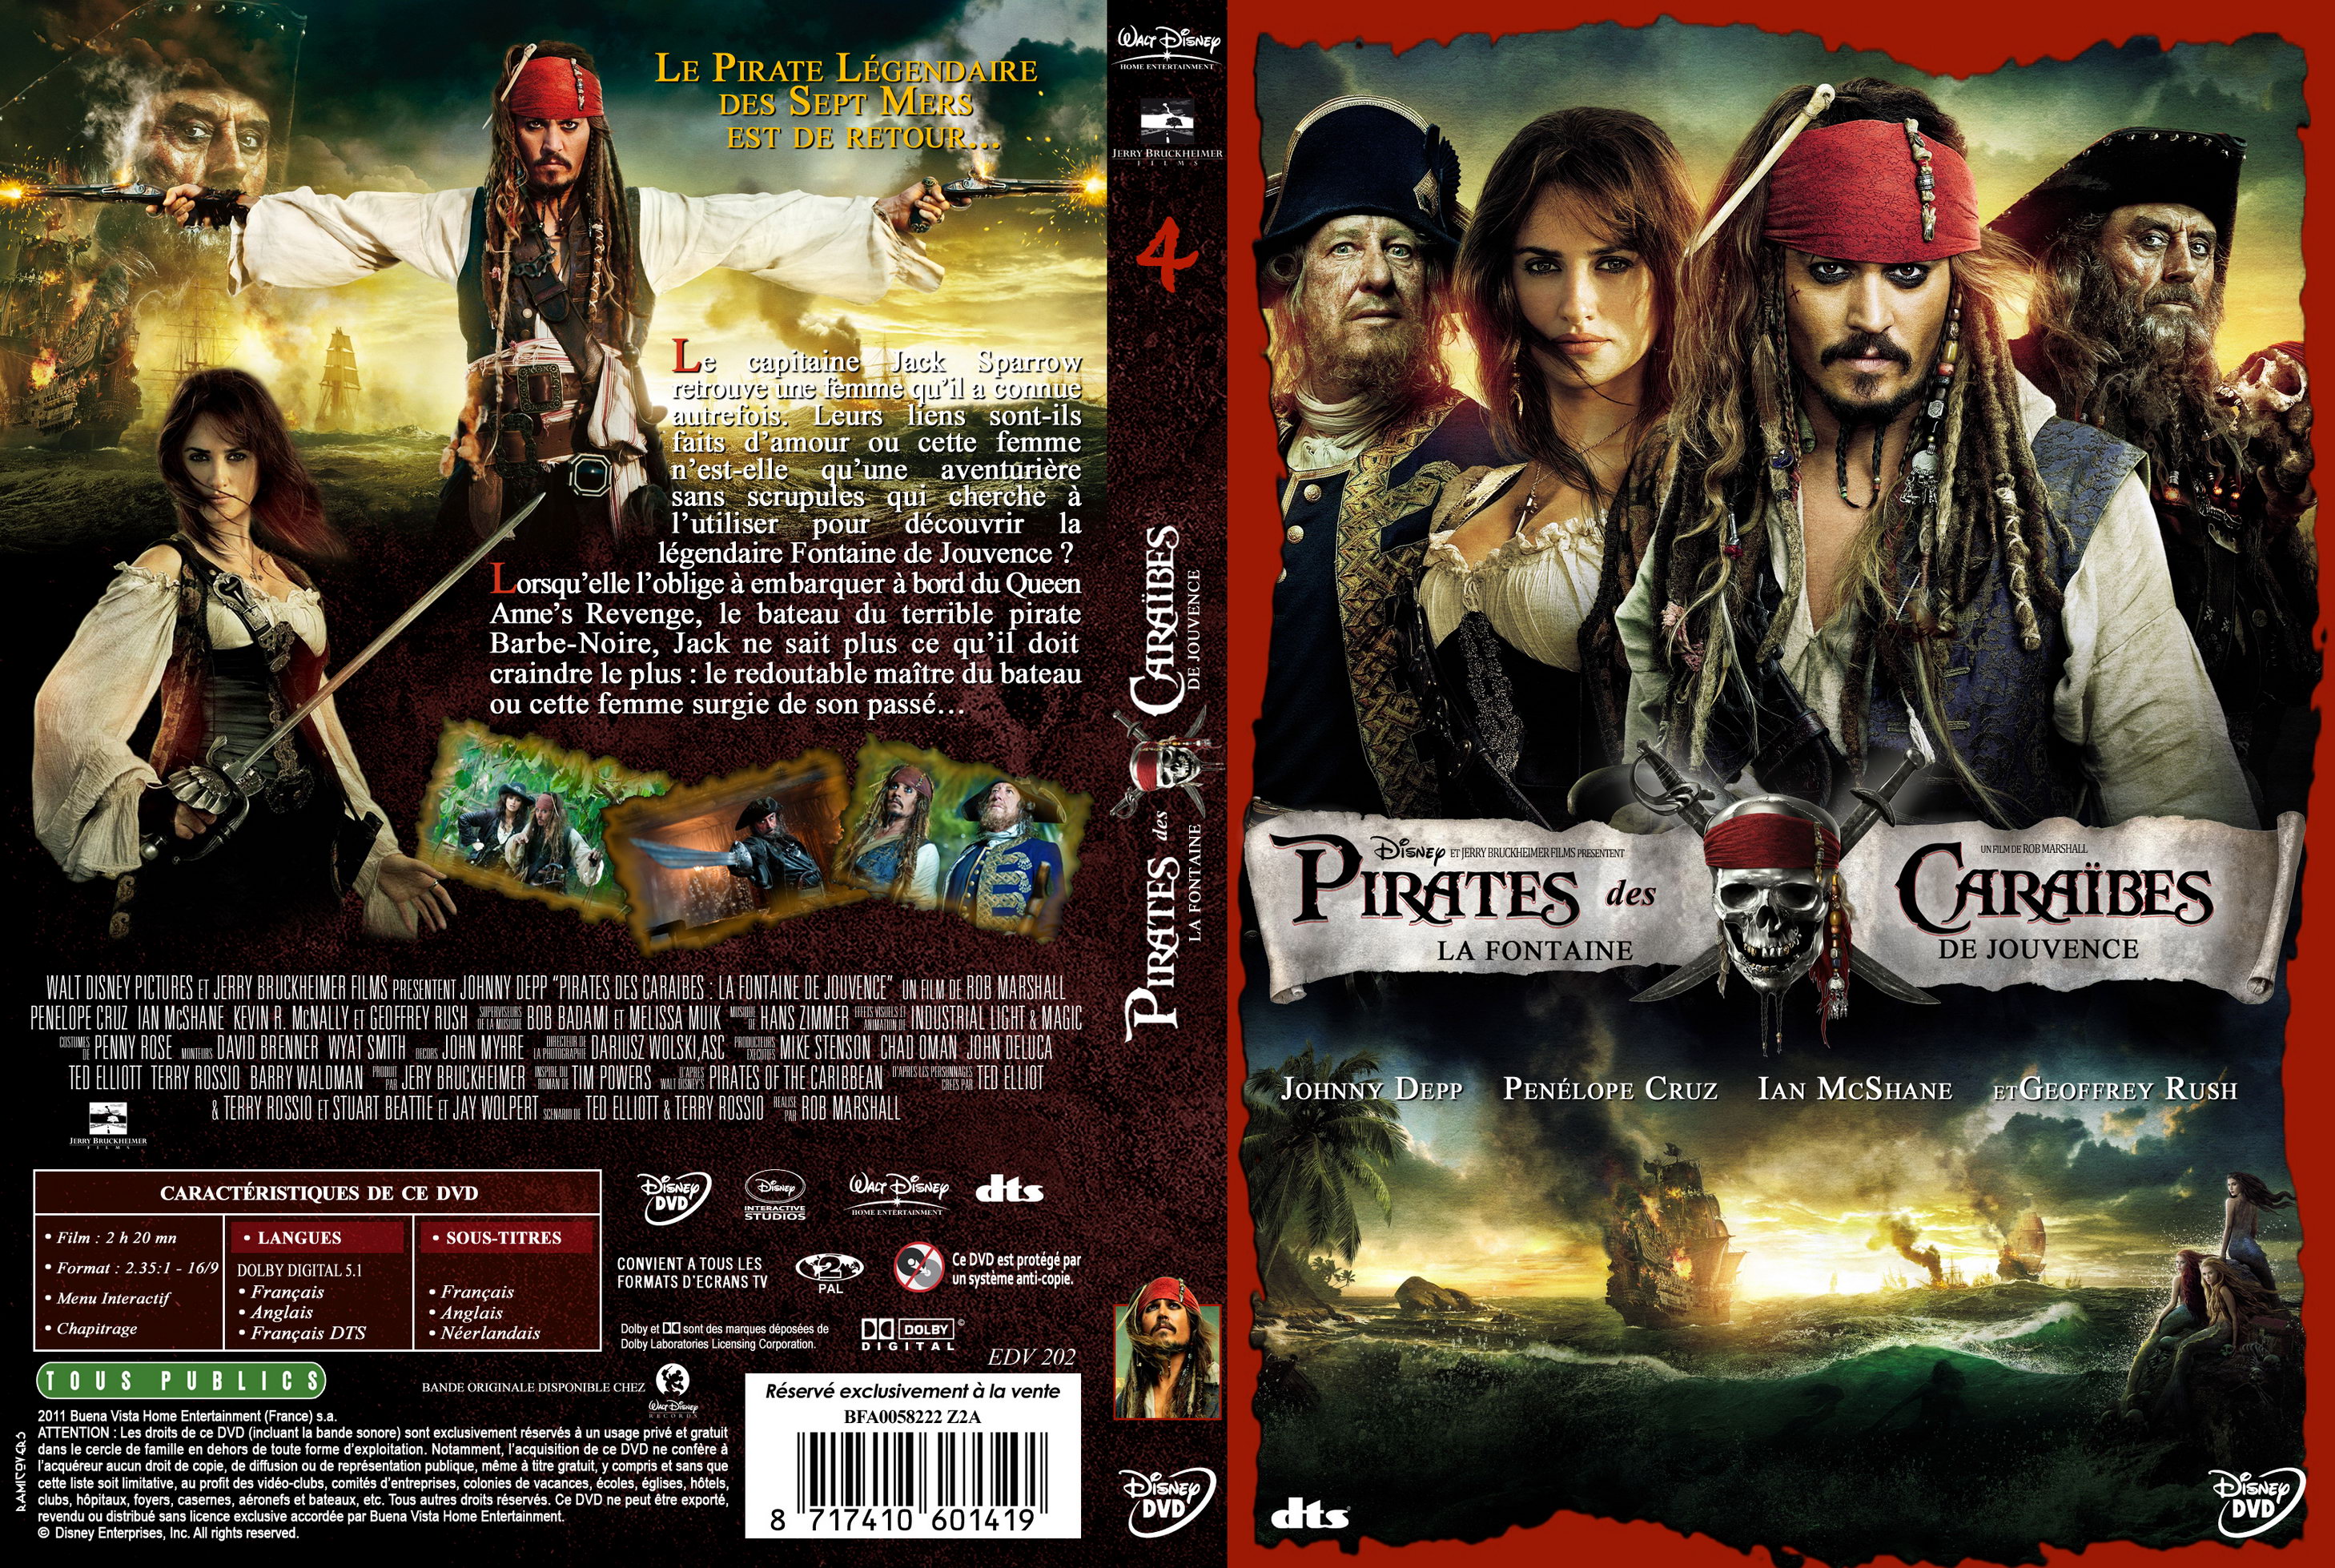 Jaquette DVD Pirates des Caraibes la Fontaine de Jouvence custom